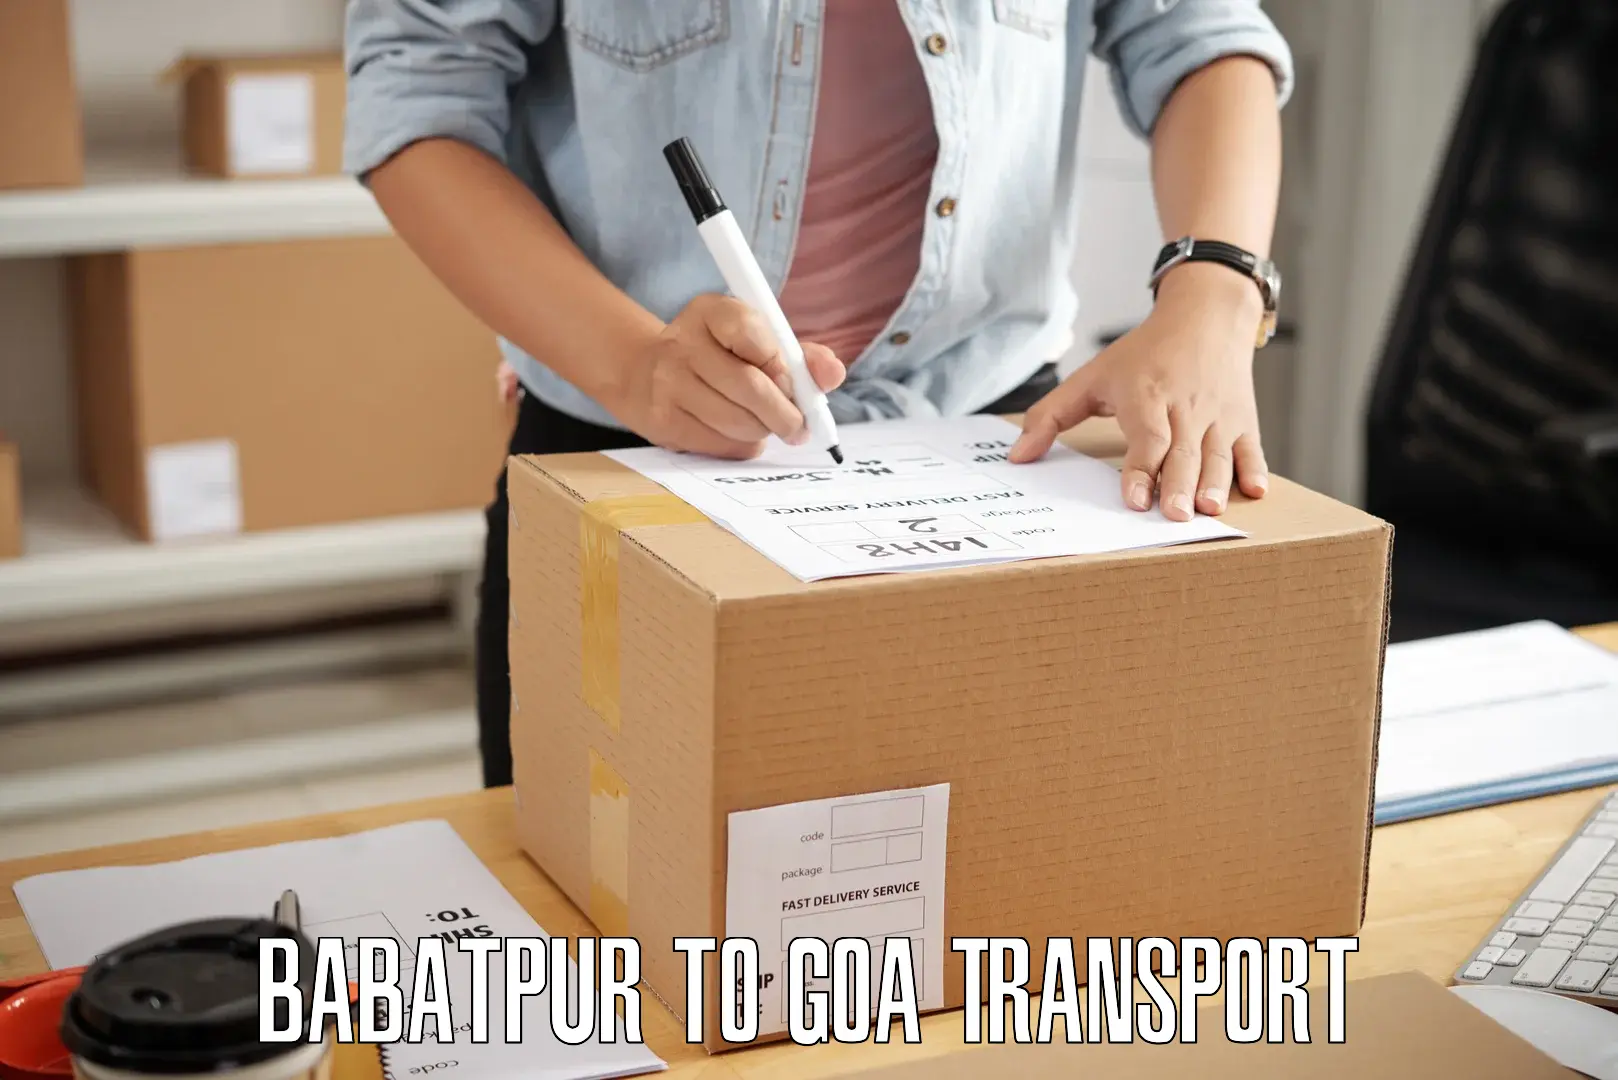 Shipping partner Babatpur to Goa University